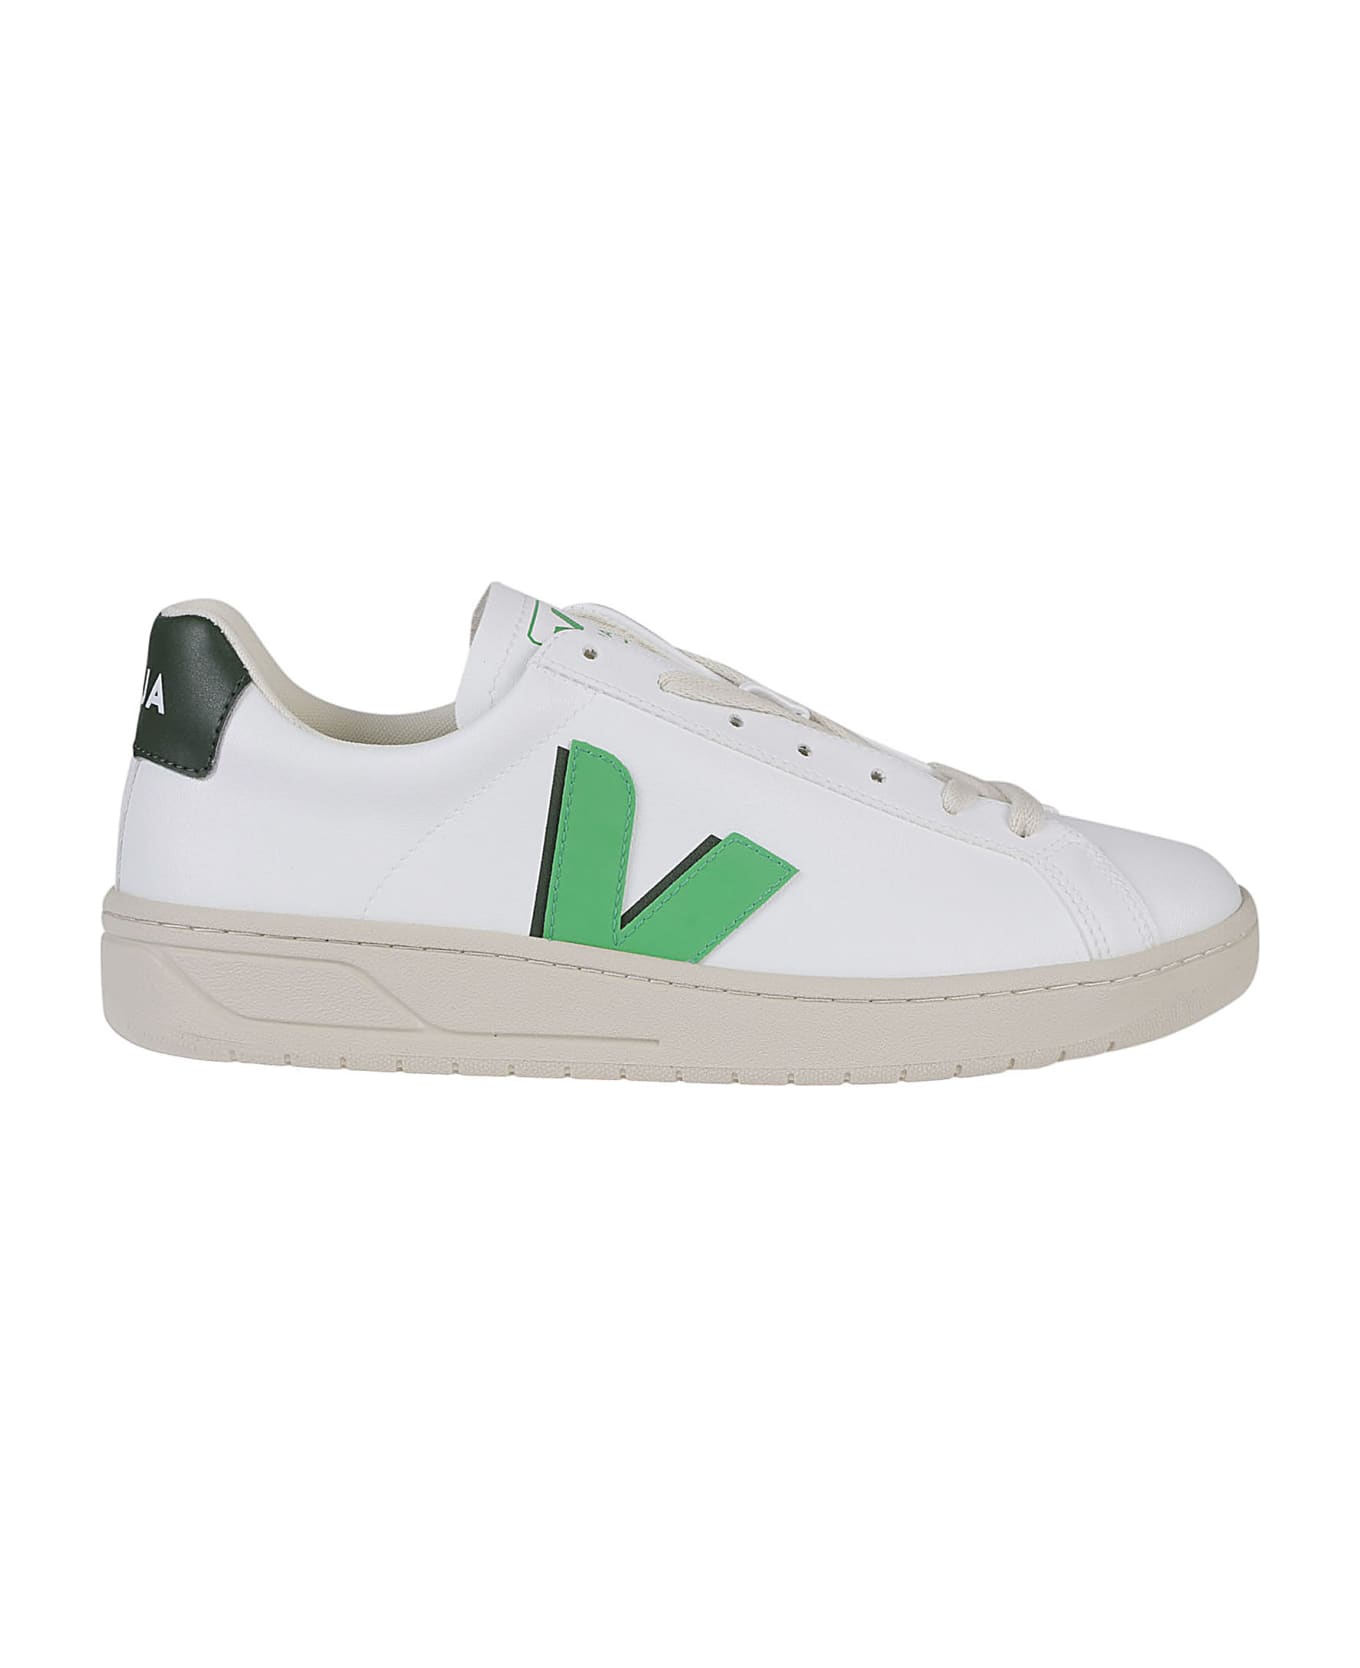 Veja Urca Sneakers - White/leaf/cyprus